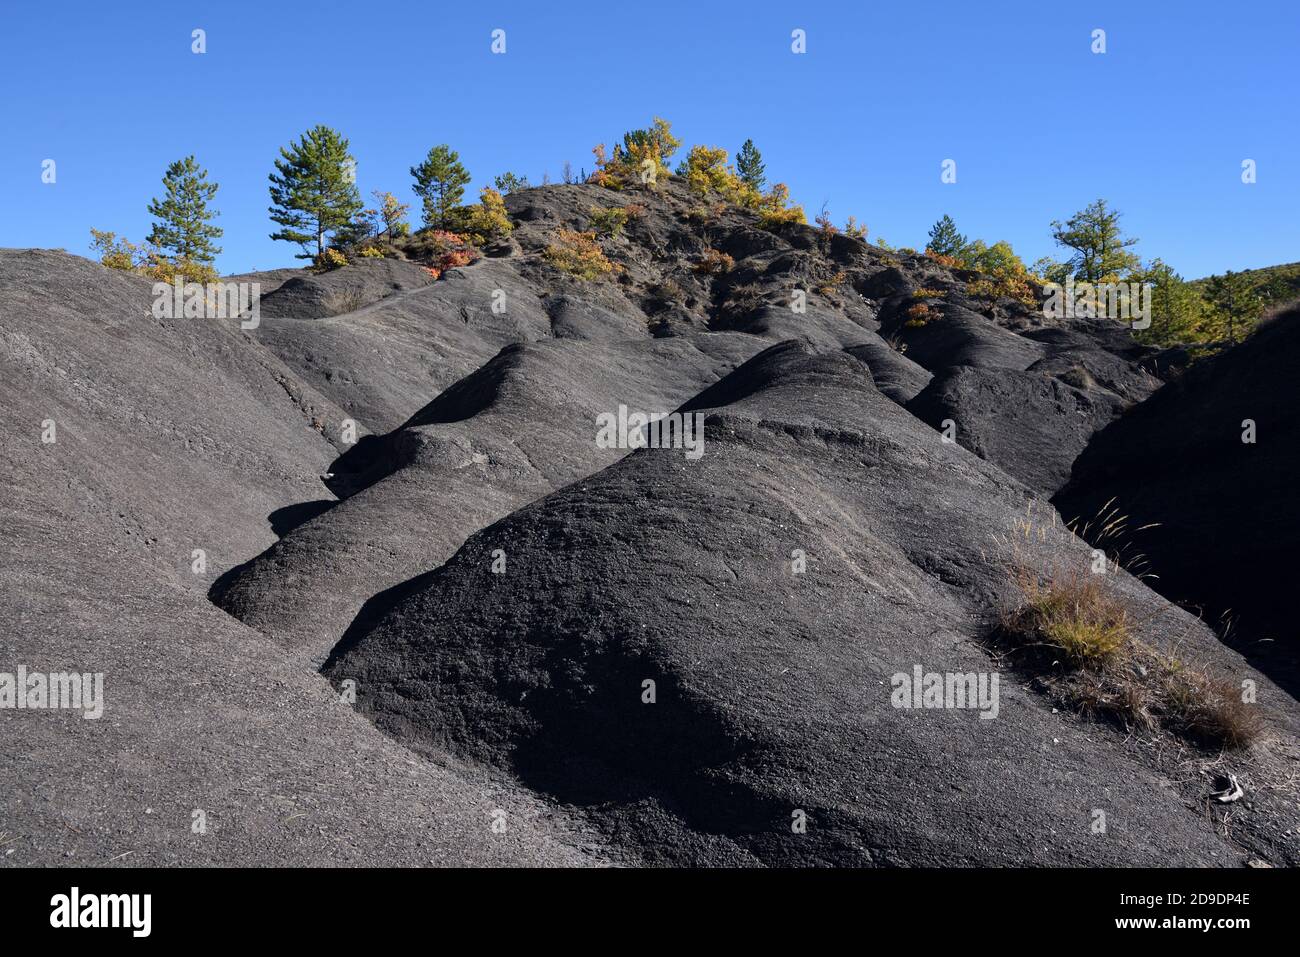 Formations de Marl noir, de Marlstone ou de Shale noir connues sous le nom de Robines dans le Geopark de haute Provence près de digne-les-bains Alpes-de-haute-Provence France Banque D'Images